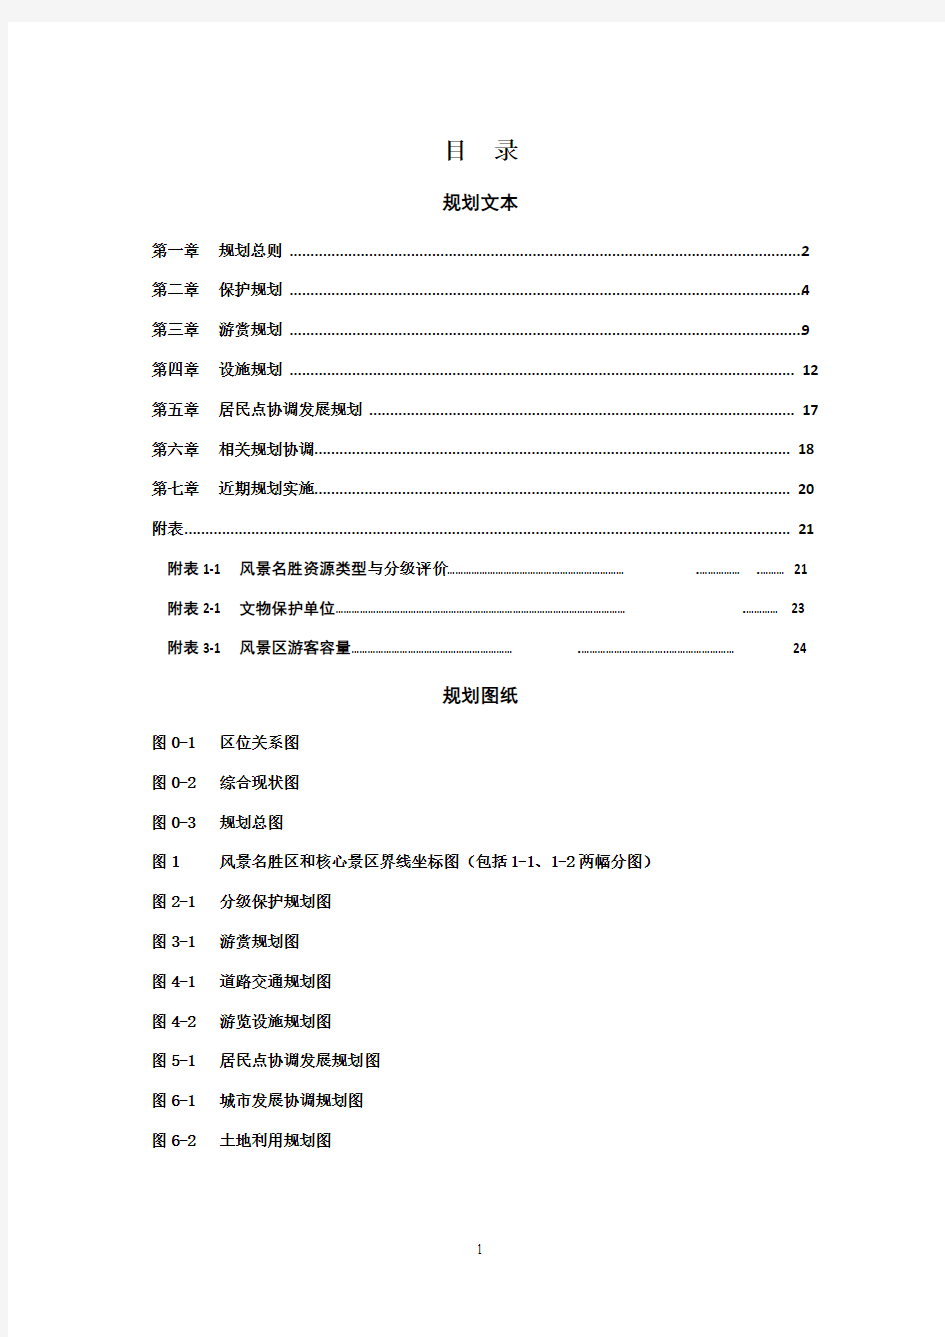 青城山-都江堰风景名胜区总体规划(2016—2030)(2016年修编版)